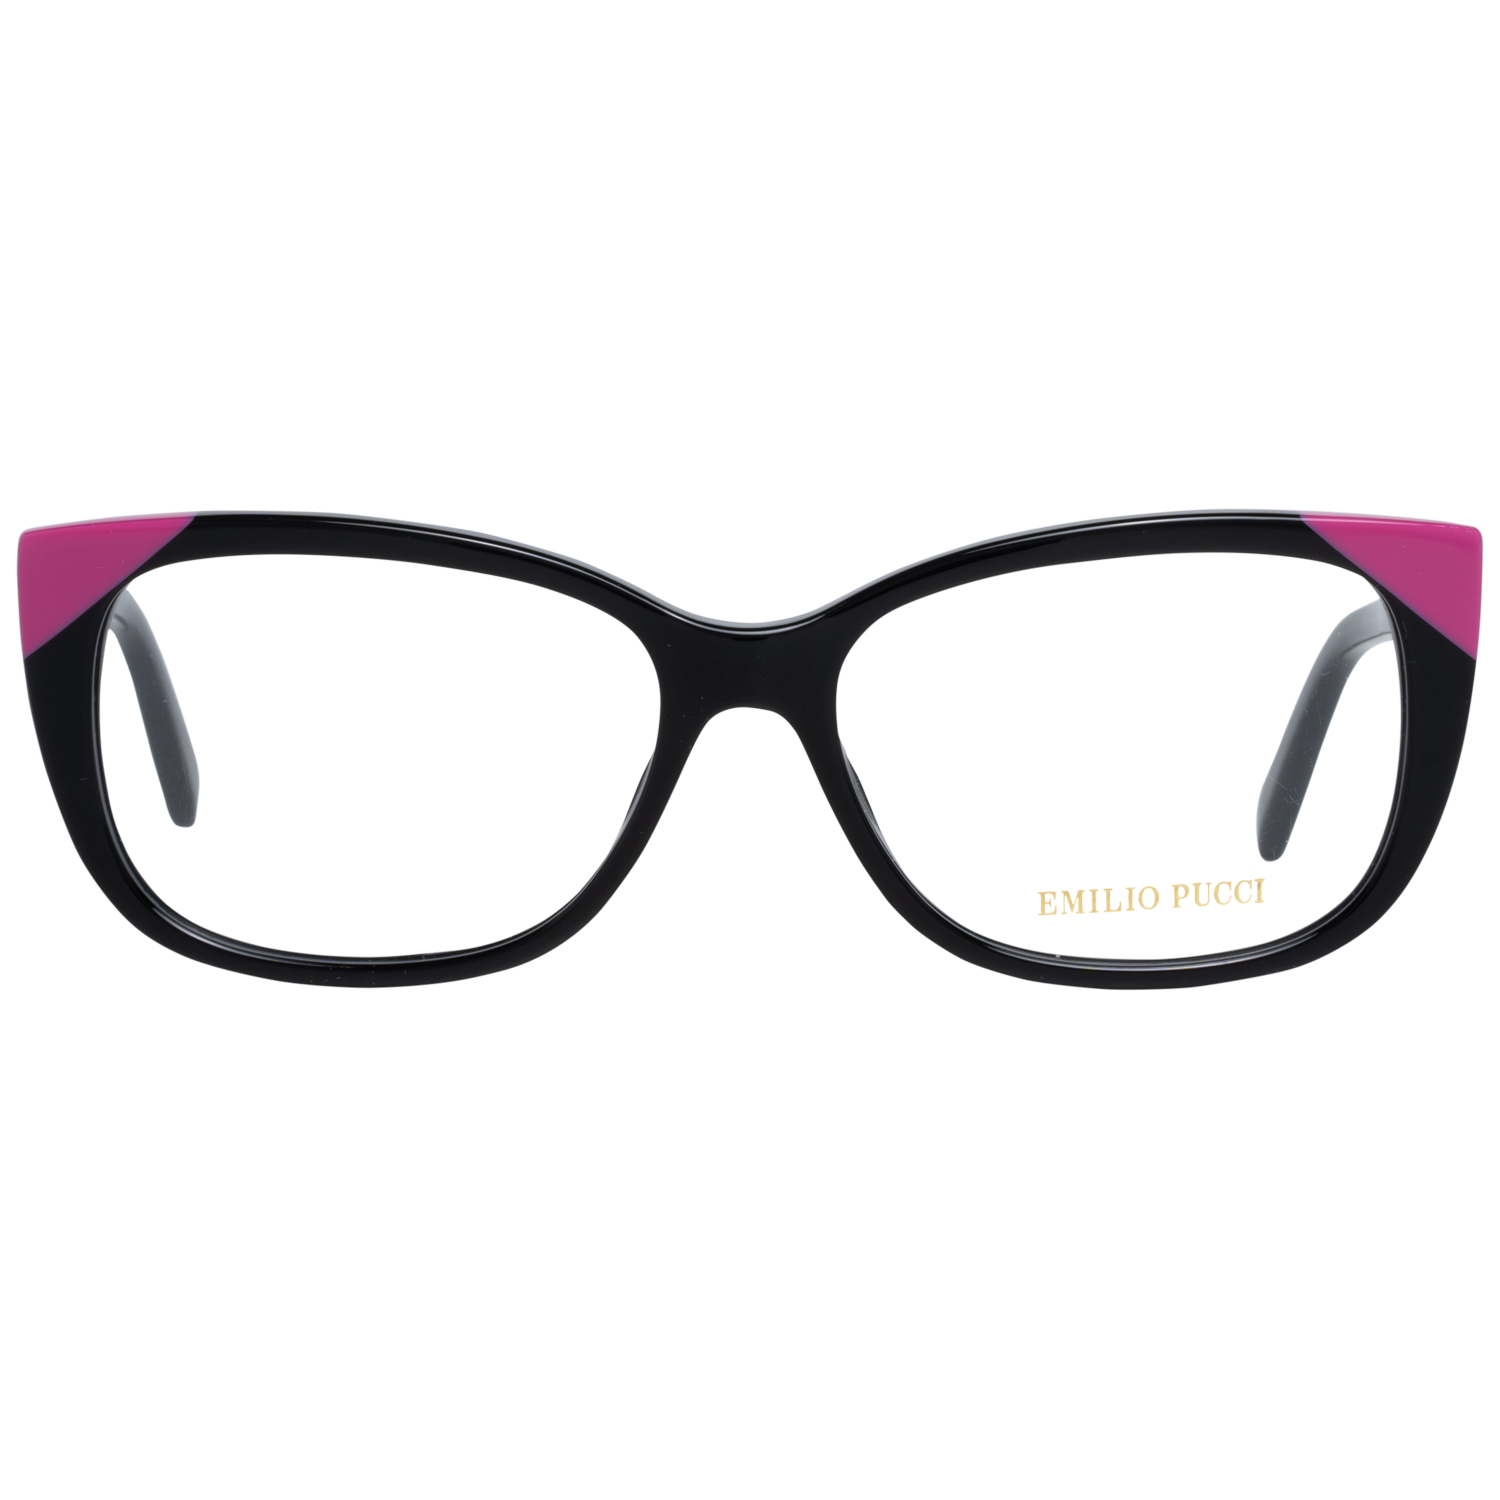 Emilio Pucci Frames Emilio Pucci Optical Frame EP5117 005 54 Eyeglasses Eyewear UK USA Australia 